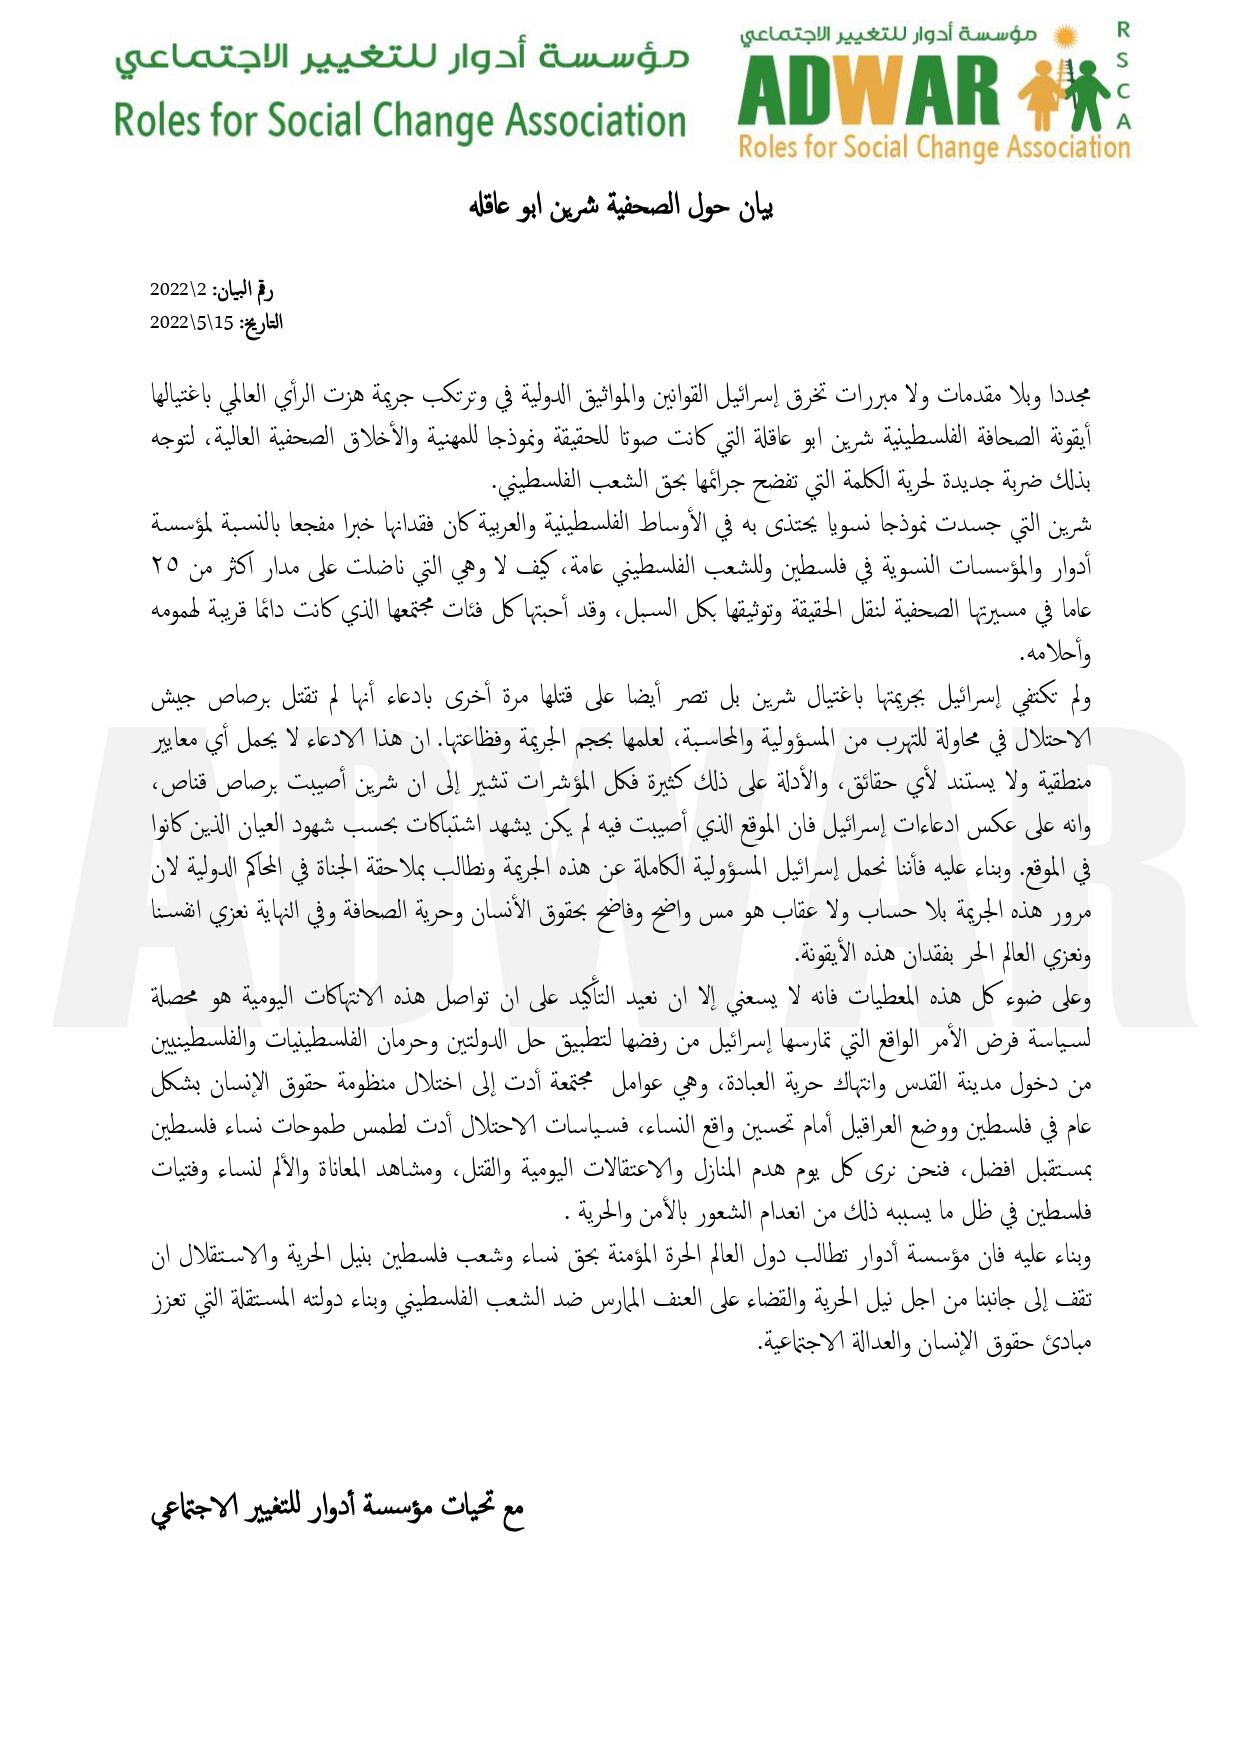  بيان صادر عن مؤسسة أدوار للتغيير الاجتماعي حول الصحفية شيرين أبو عاقلة